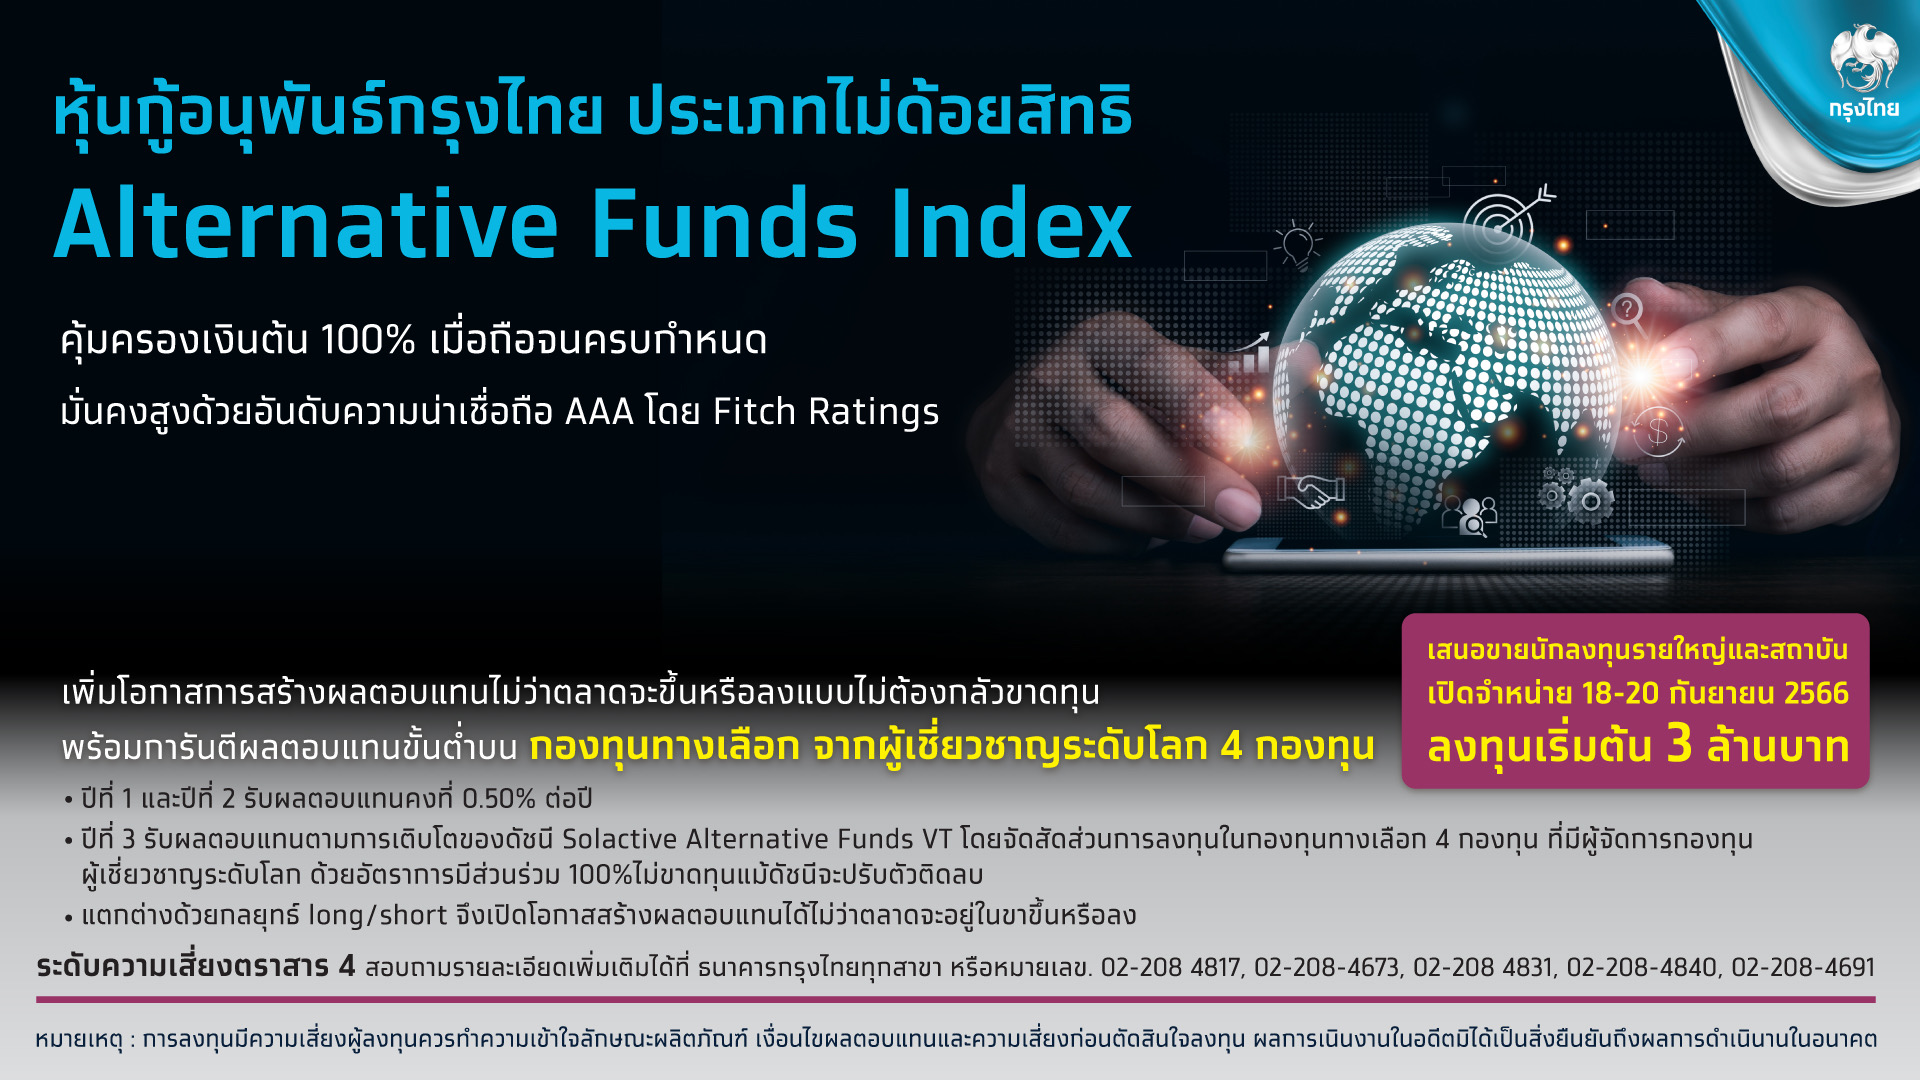 “กรุงไทย” เปิดขายหุ้นกู้อนุพันธ์ Alternative Funds Index  คุ้มครองเงินต้น 100% ดีเดย์ 18-20 ก.ย.นี้